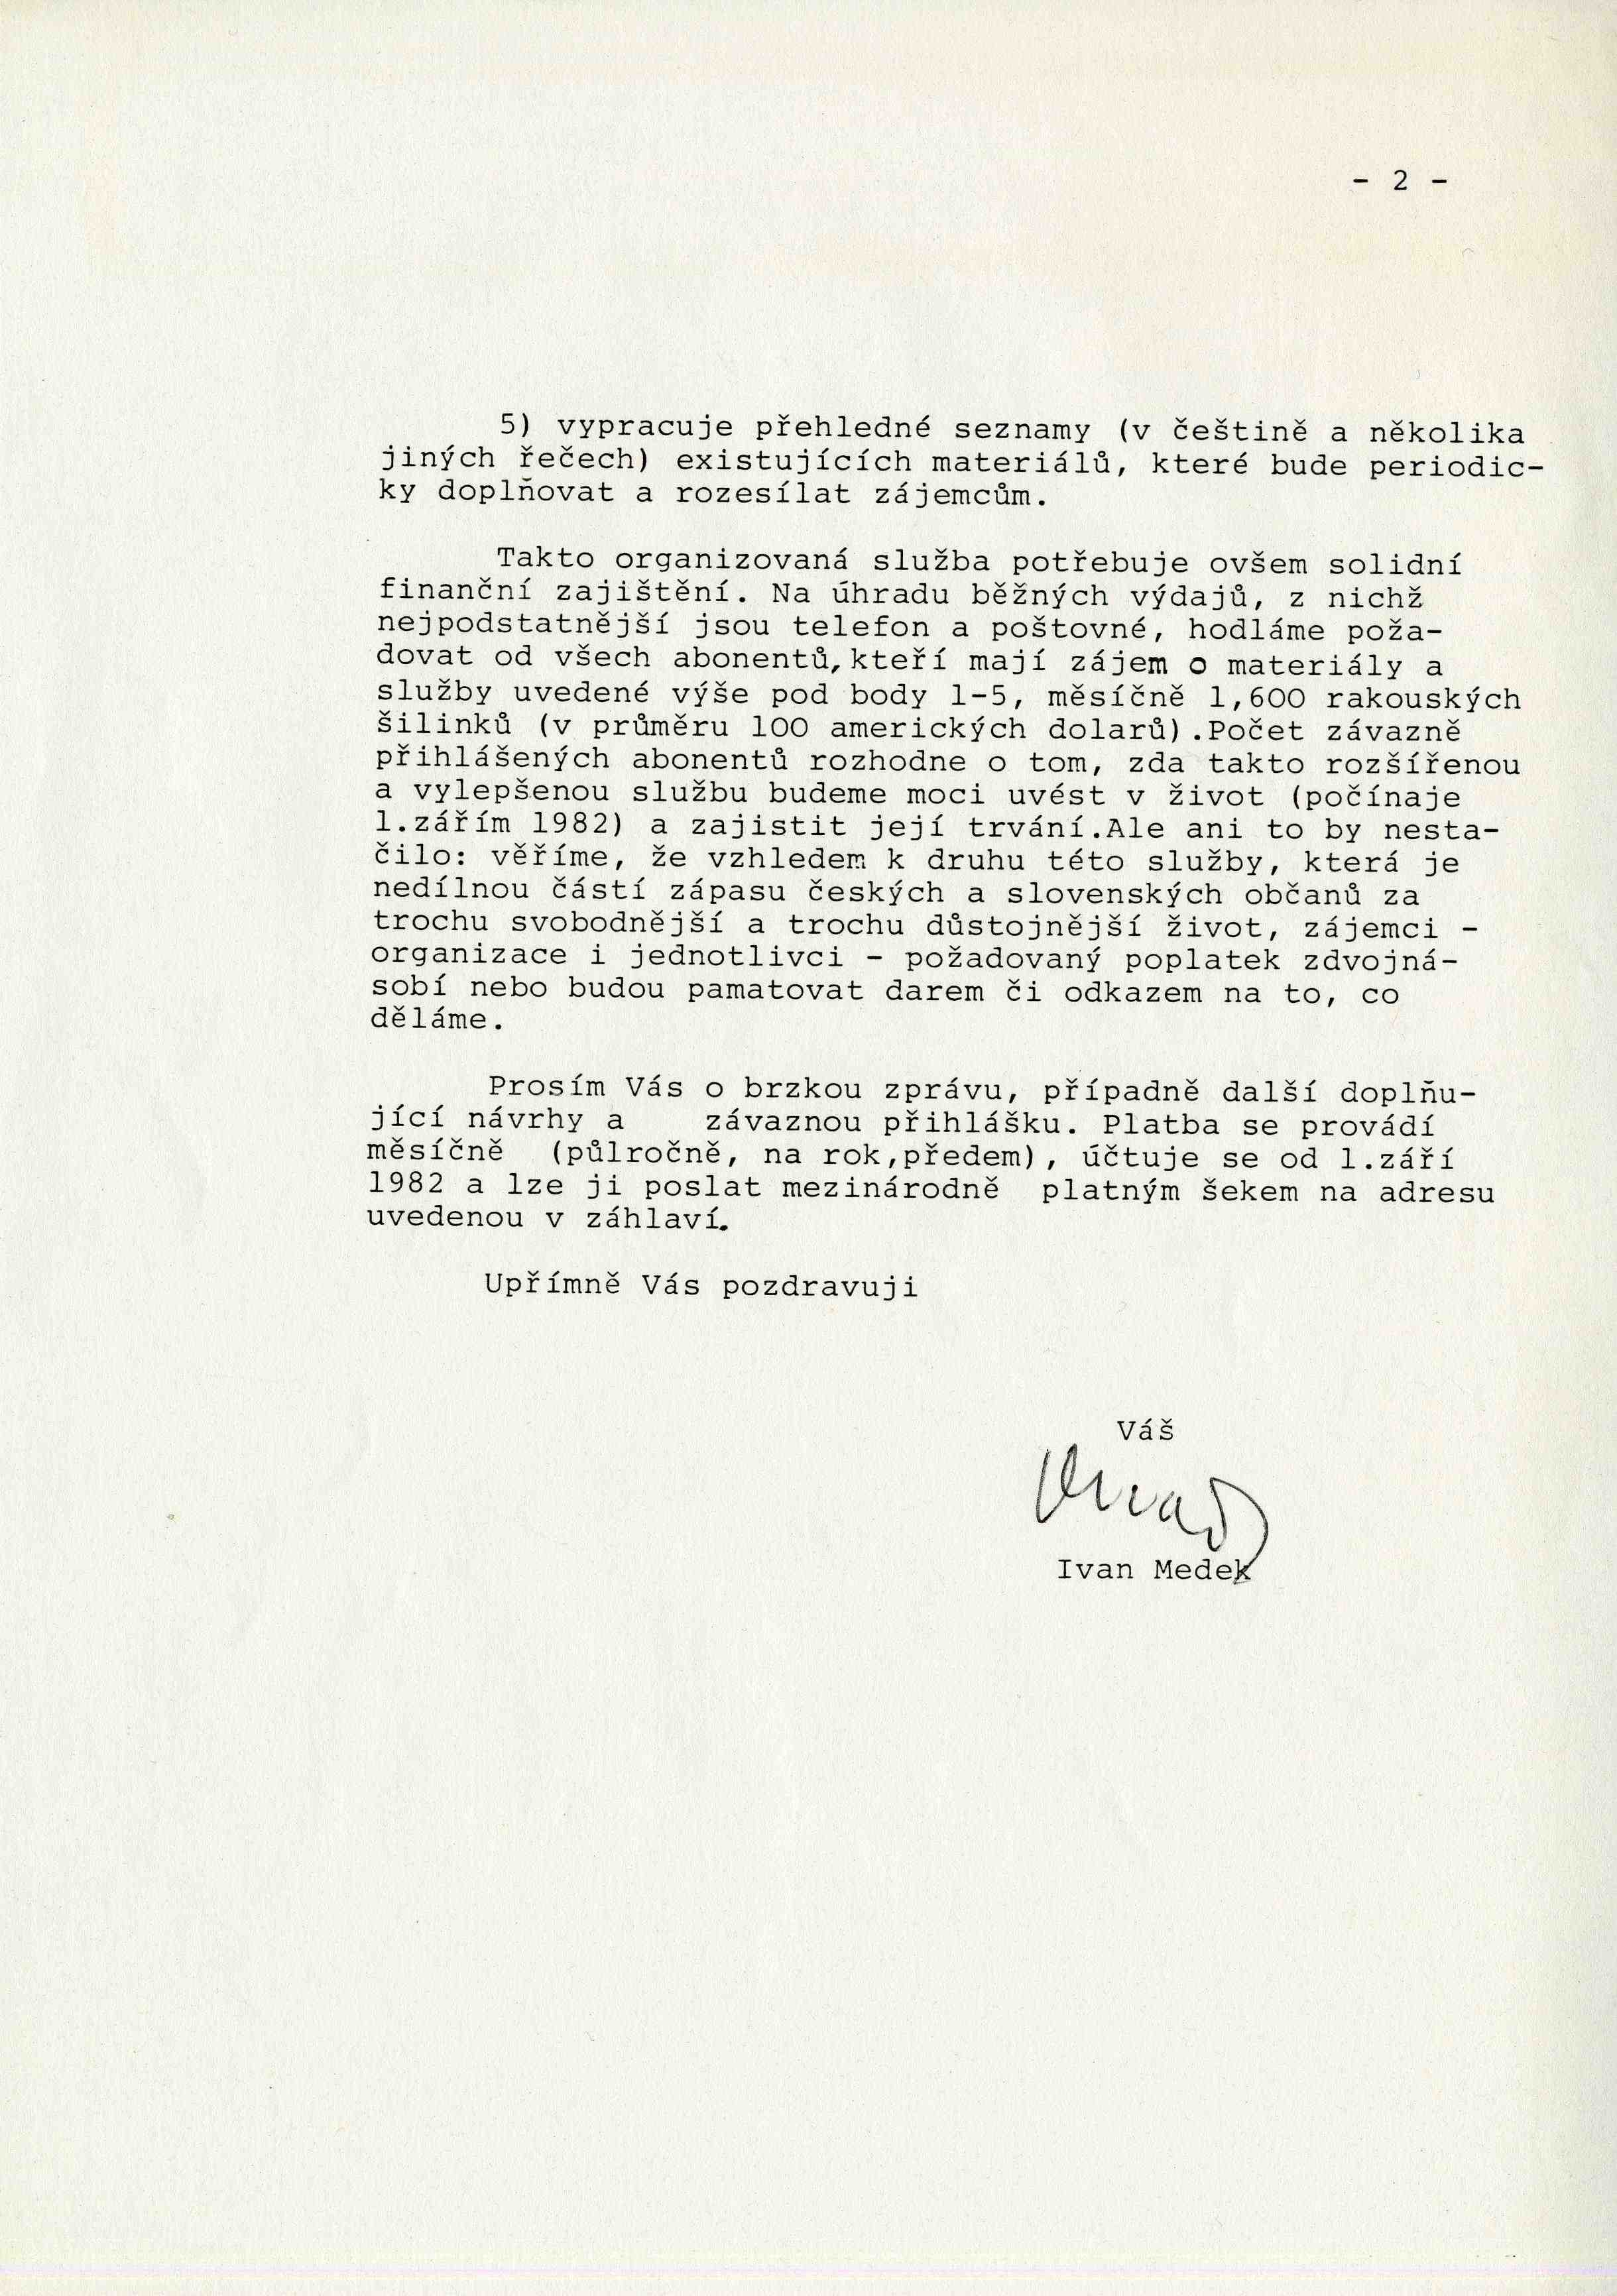 Druhá část dopisu Ivana Medka, kterým informoval o založení Tiskové služby v roce 1982